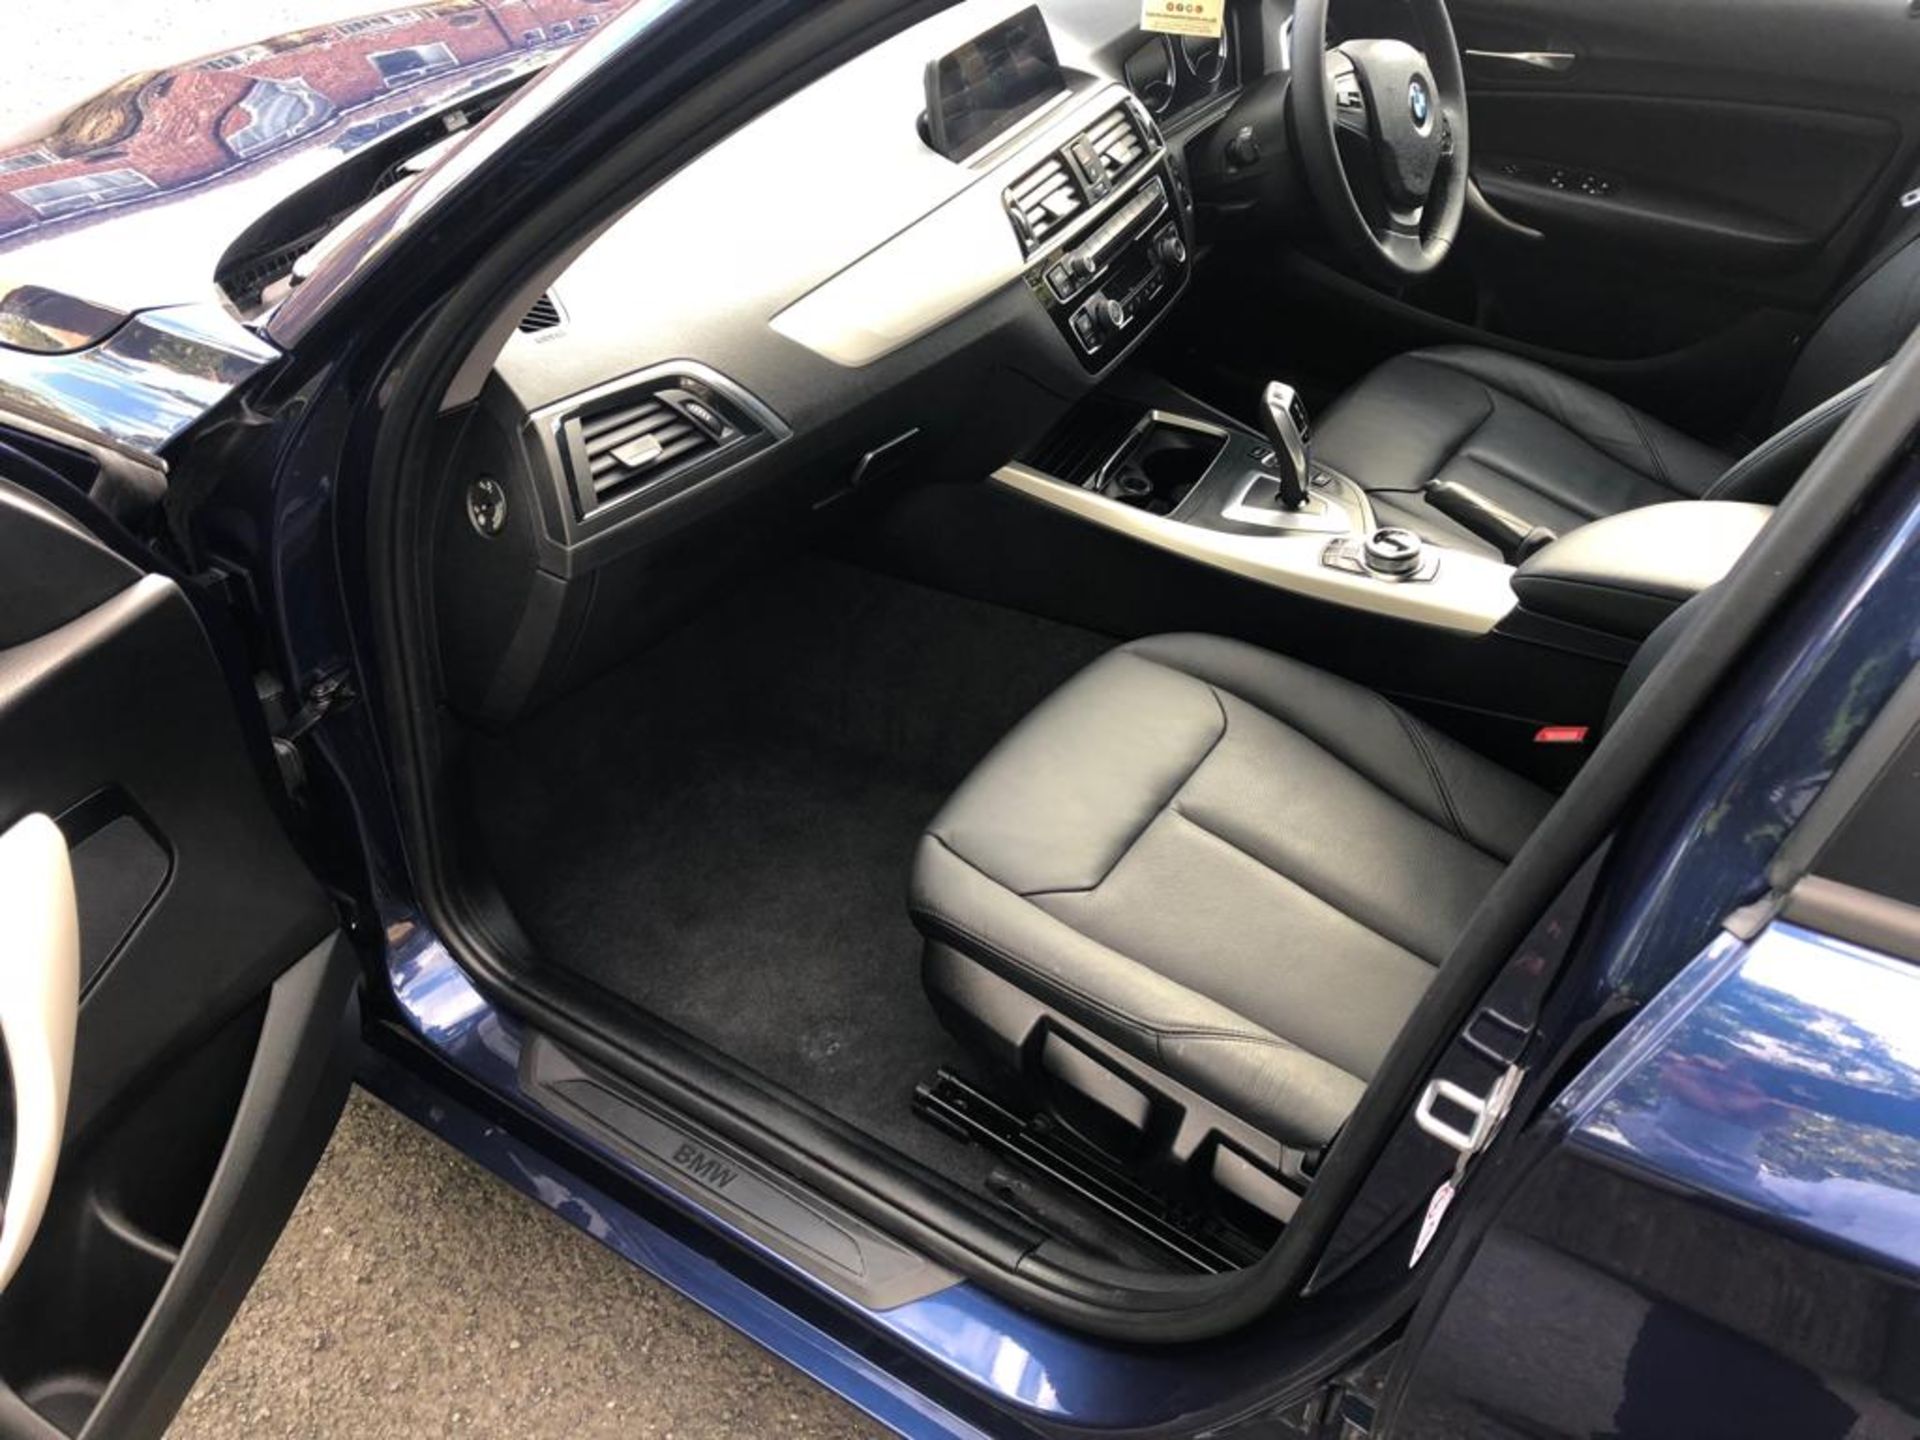 2018/67 REG BMW 118D SE AUTOMATIC BLUE DIESEL 5 DOOR HATCHBACK, SHOWING 0 FORMER KEEPERS *NO VAT* - Image 13 of 18